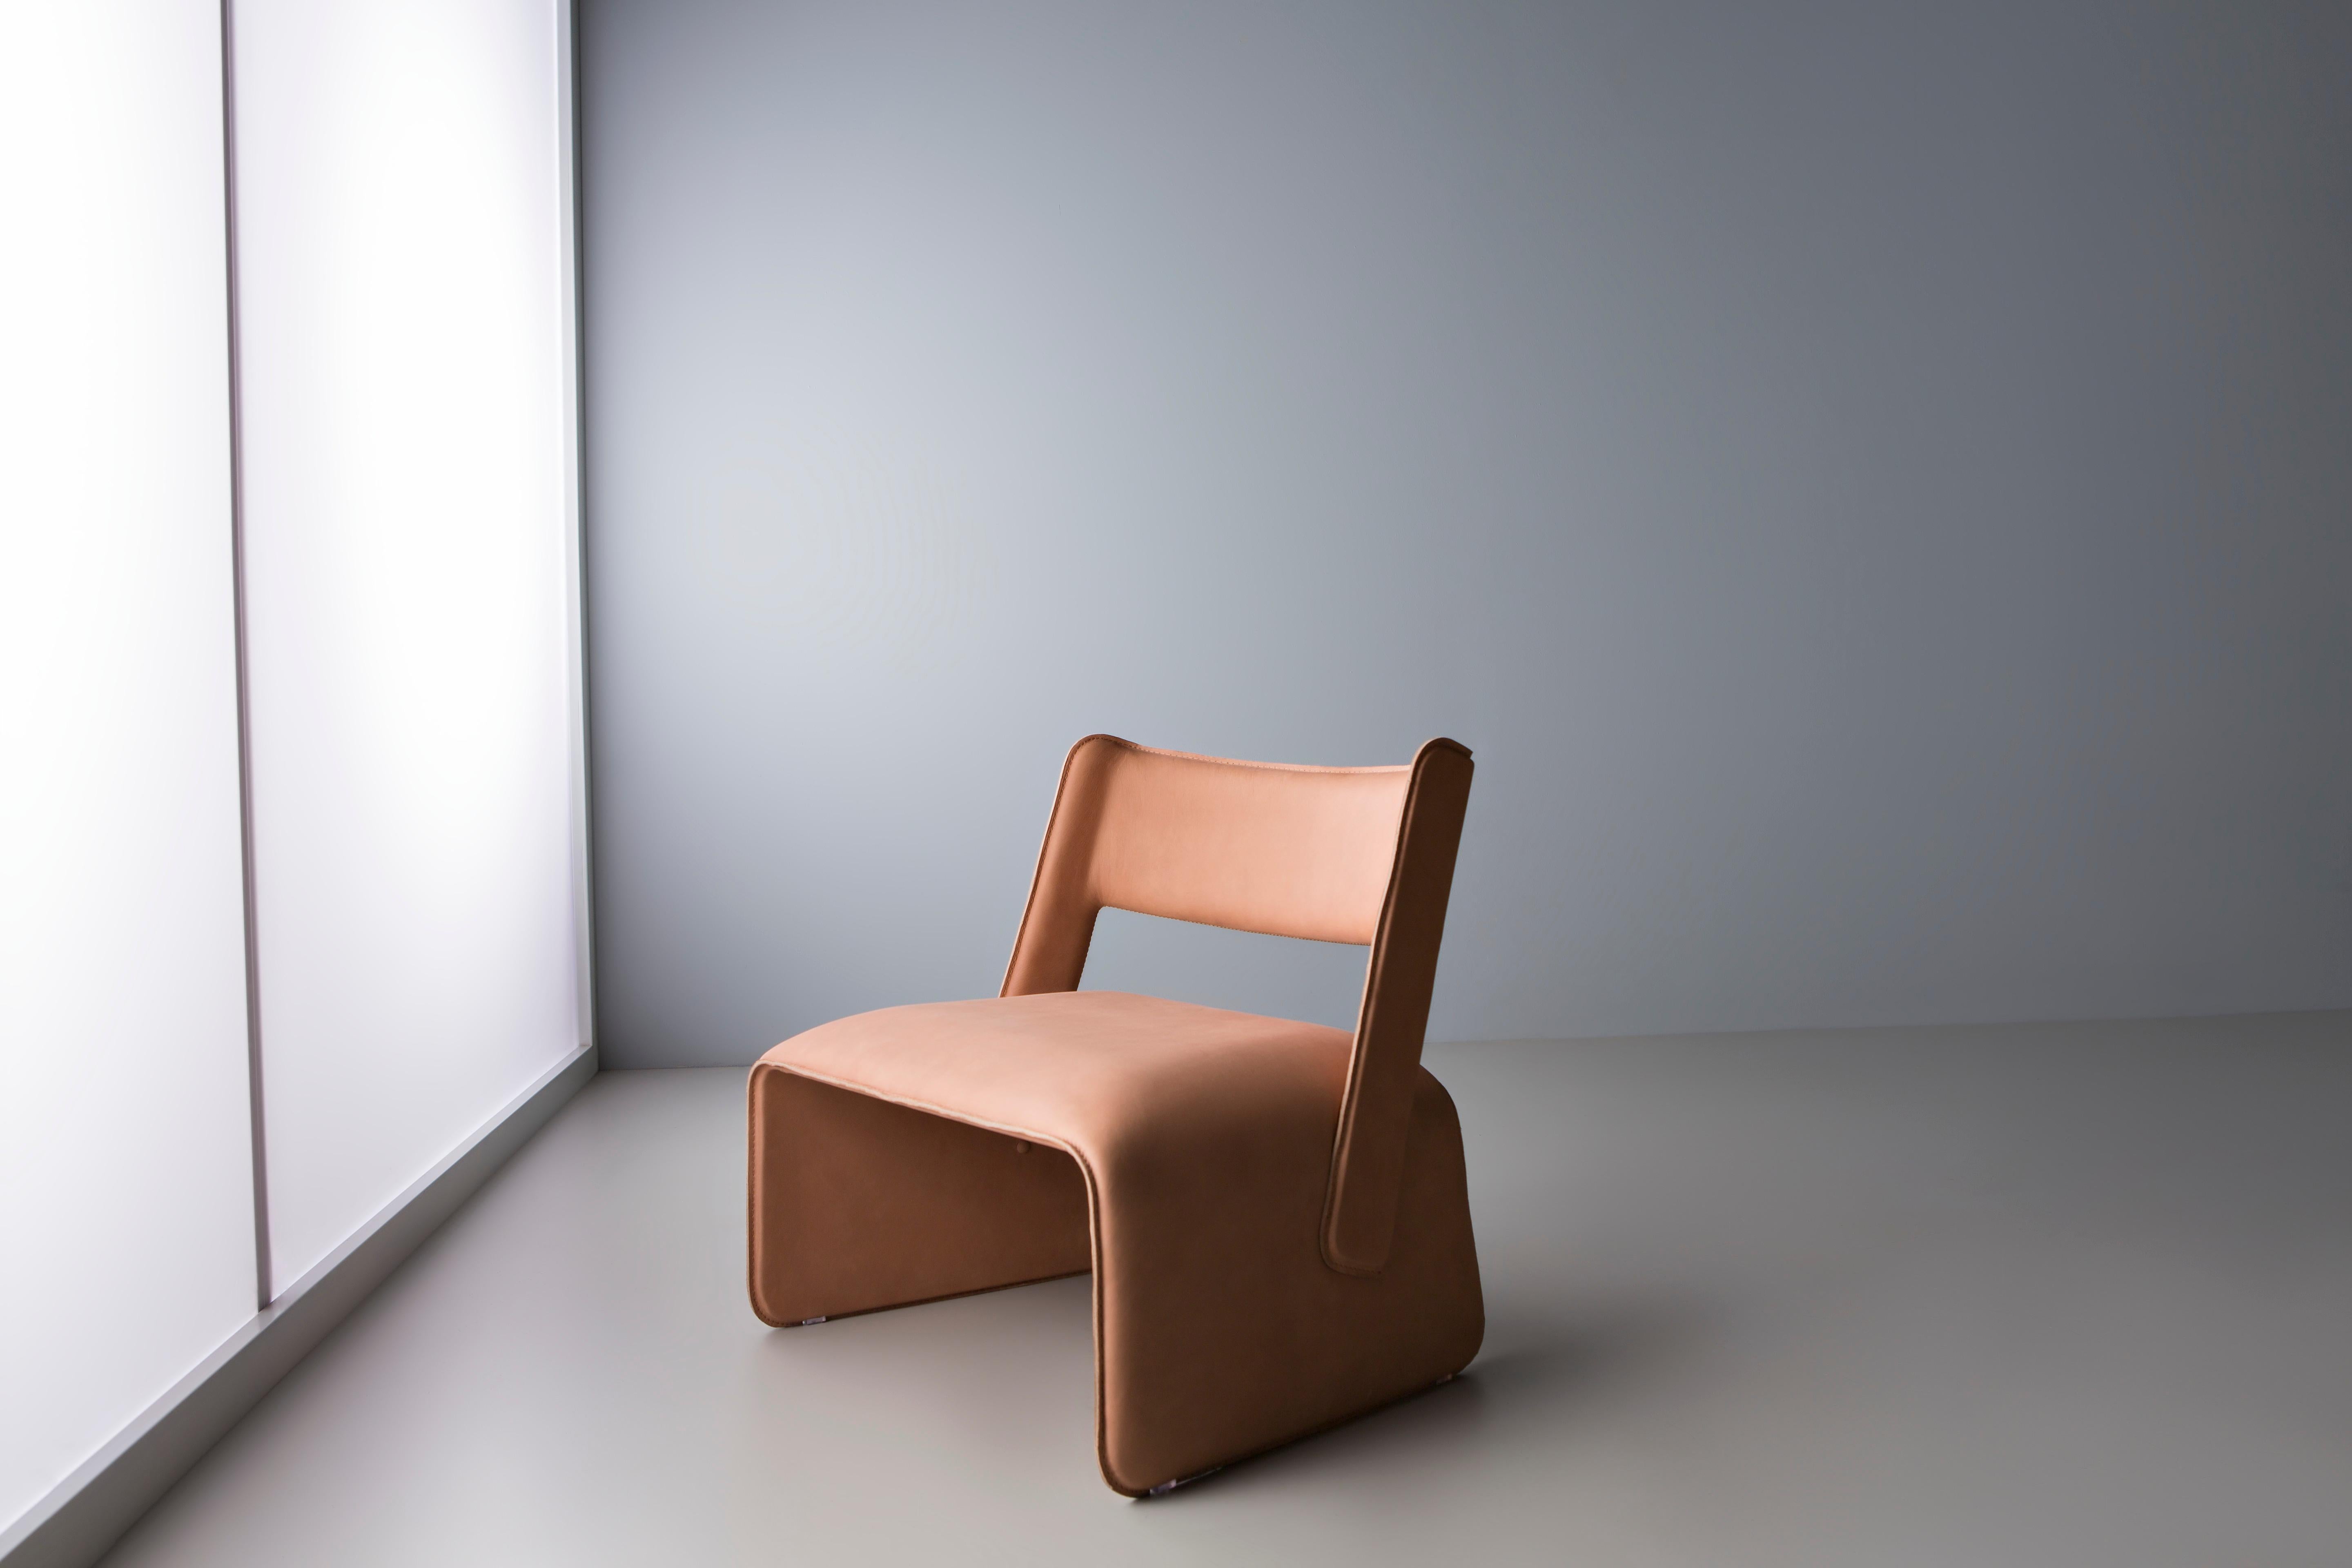 Vico-Stuhl von Doimo Brasil
Abmessungen: B 54 x T 60 x H 72 cm 
MATERIALIEN: Metall, Naturleder. 

Mit der Absicht, guten Geschmack und Persönlichkeit zu vermitteln, entschlüsselt Doimo Trends und folgt der Entwicklung des Menschen und seines Raums.